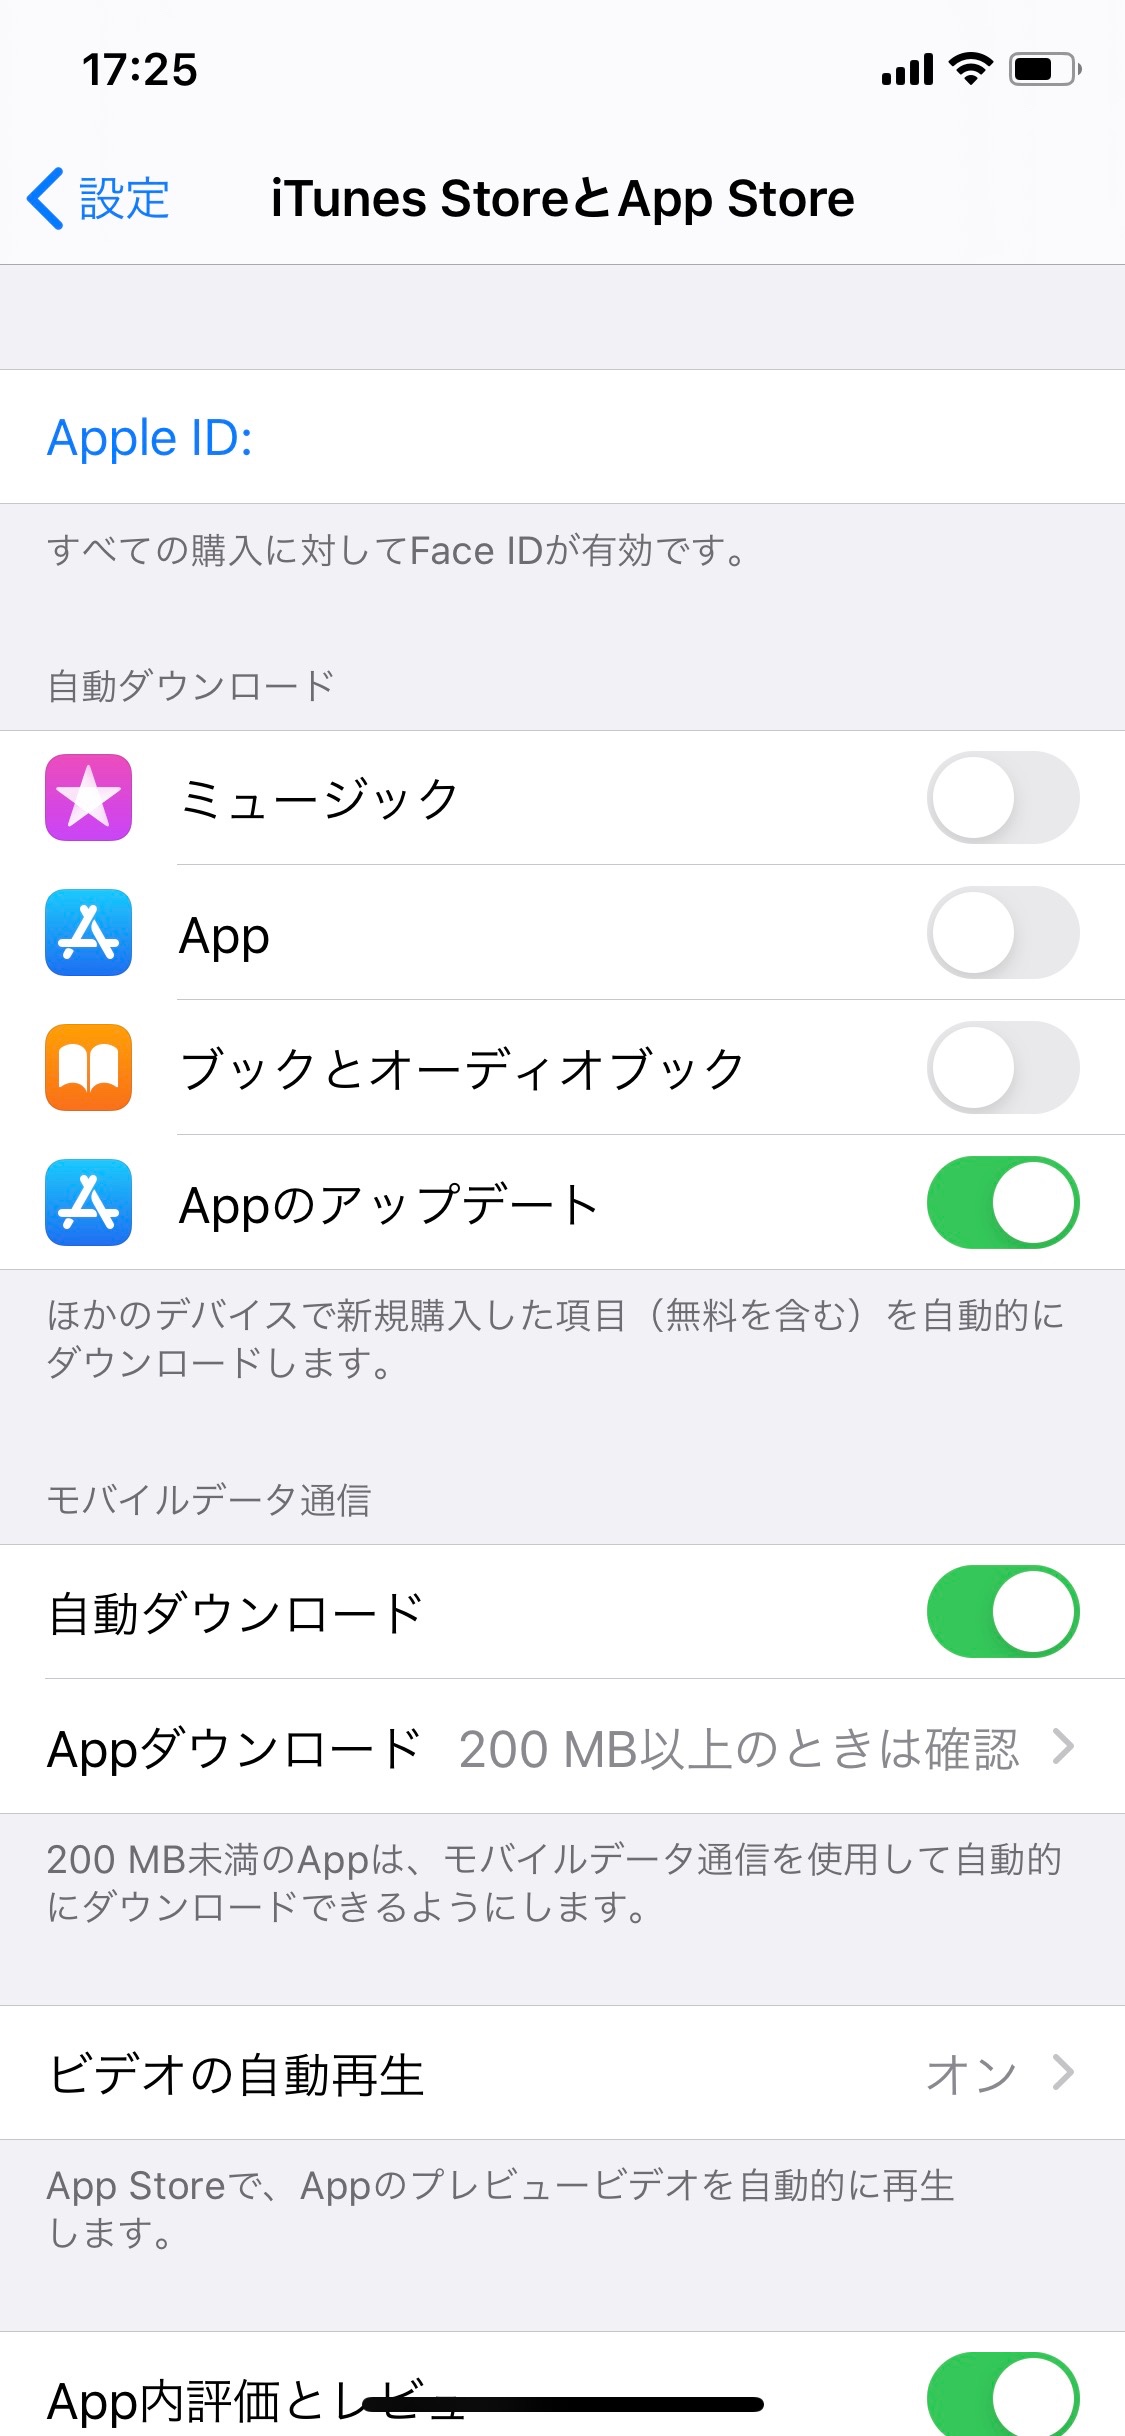 App Storeでパスワード入力要求 Apple コミュニティ